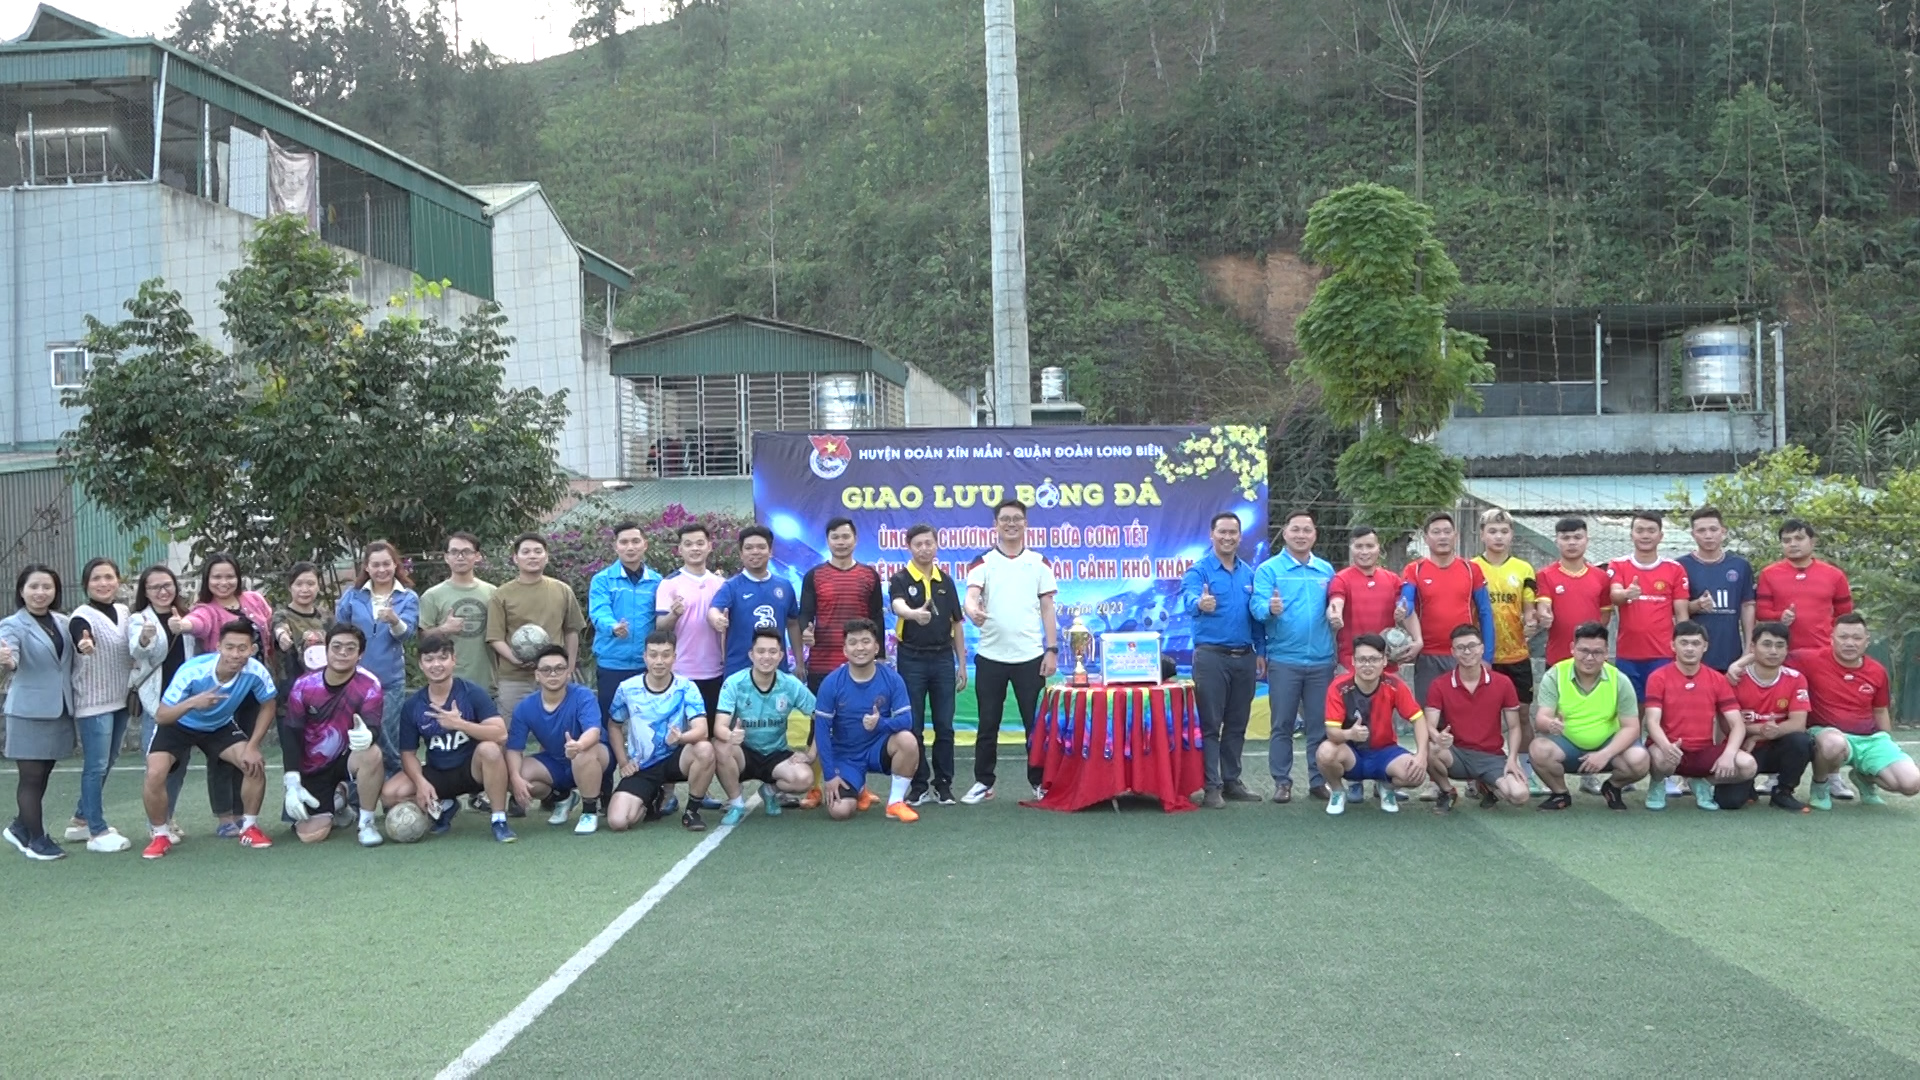 Giao lưu bóng đá ủng hộ chương trình bữa cơm Tết cho bệnh nhân nghèo